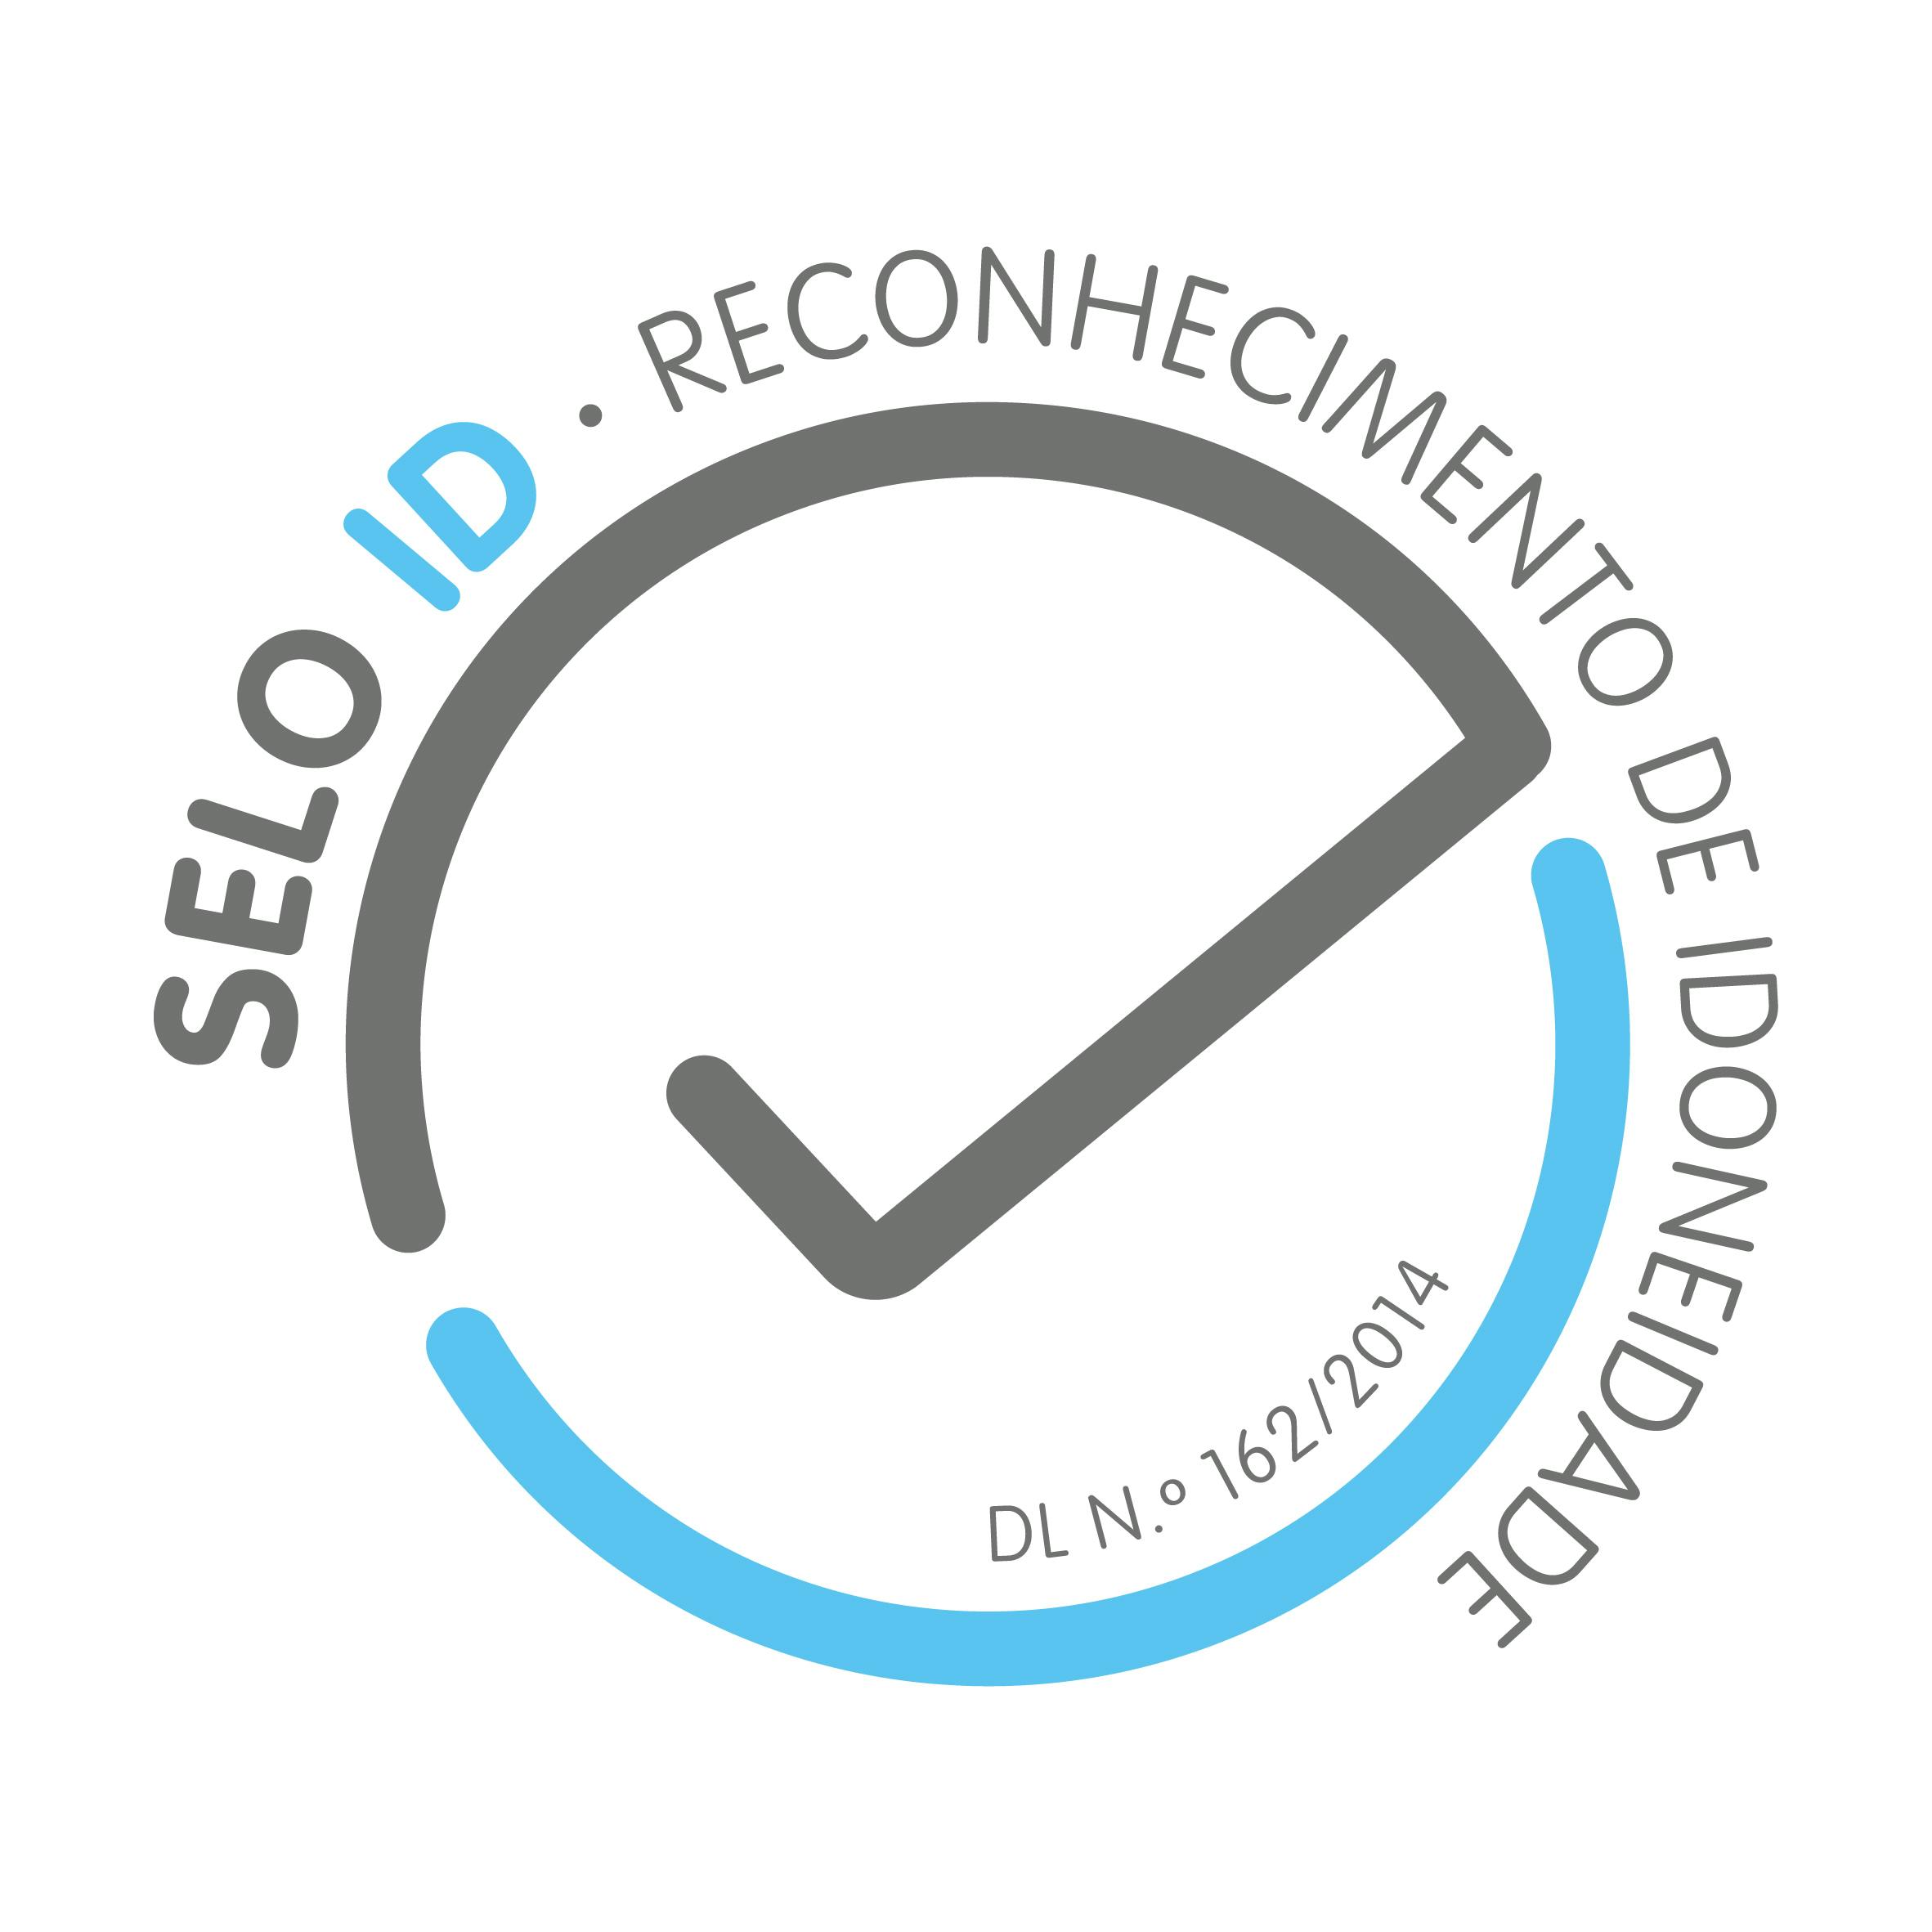 ANI Stamp "Selo ID Reconhecimento de Idoneidade" - Recognition of Suitability